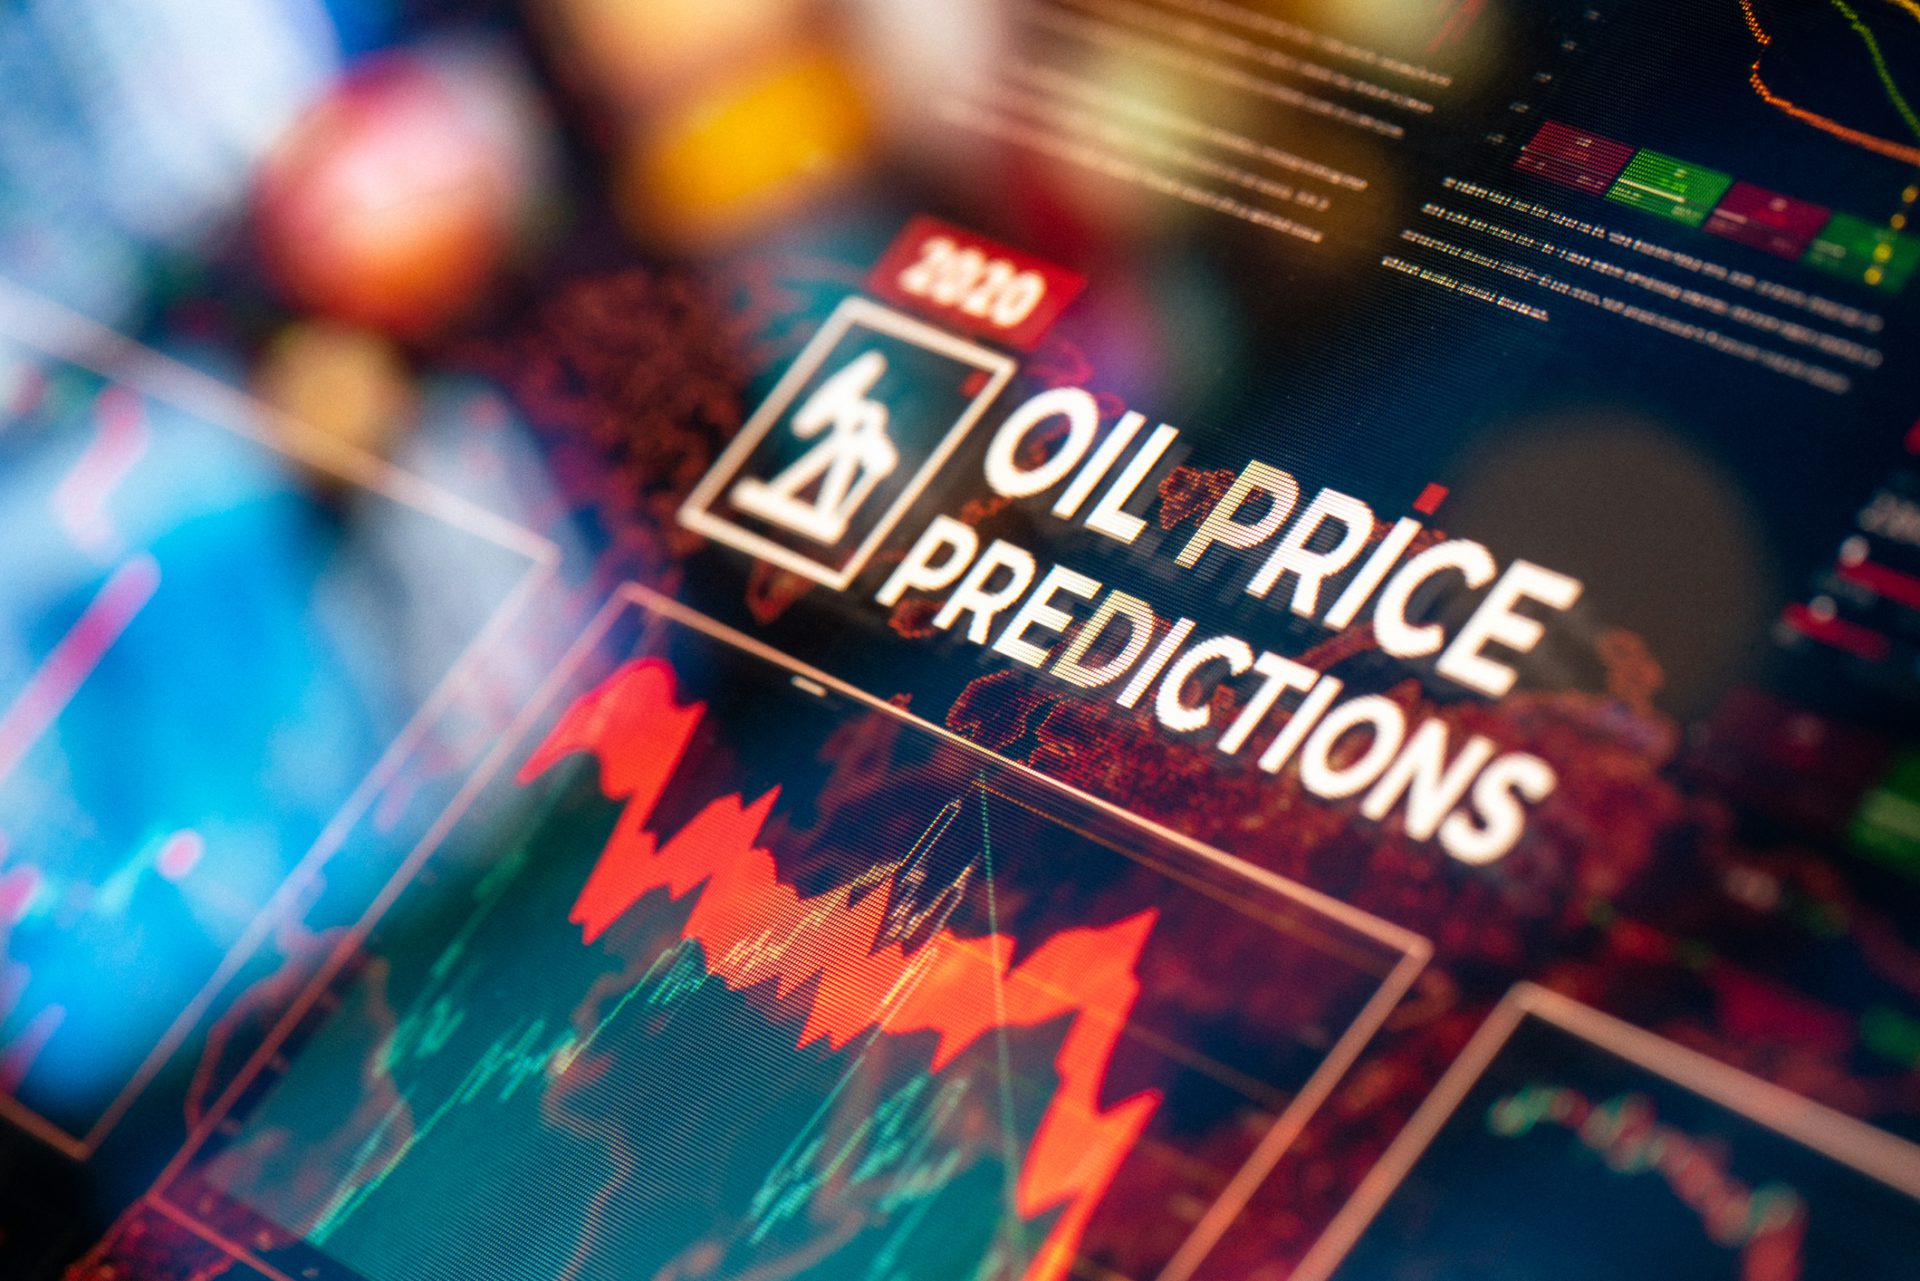 Crude Oil Price Predictions